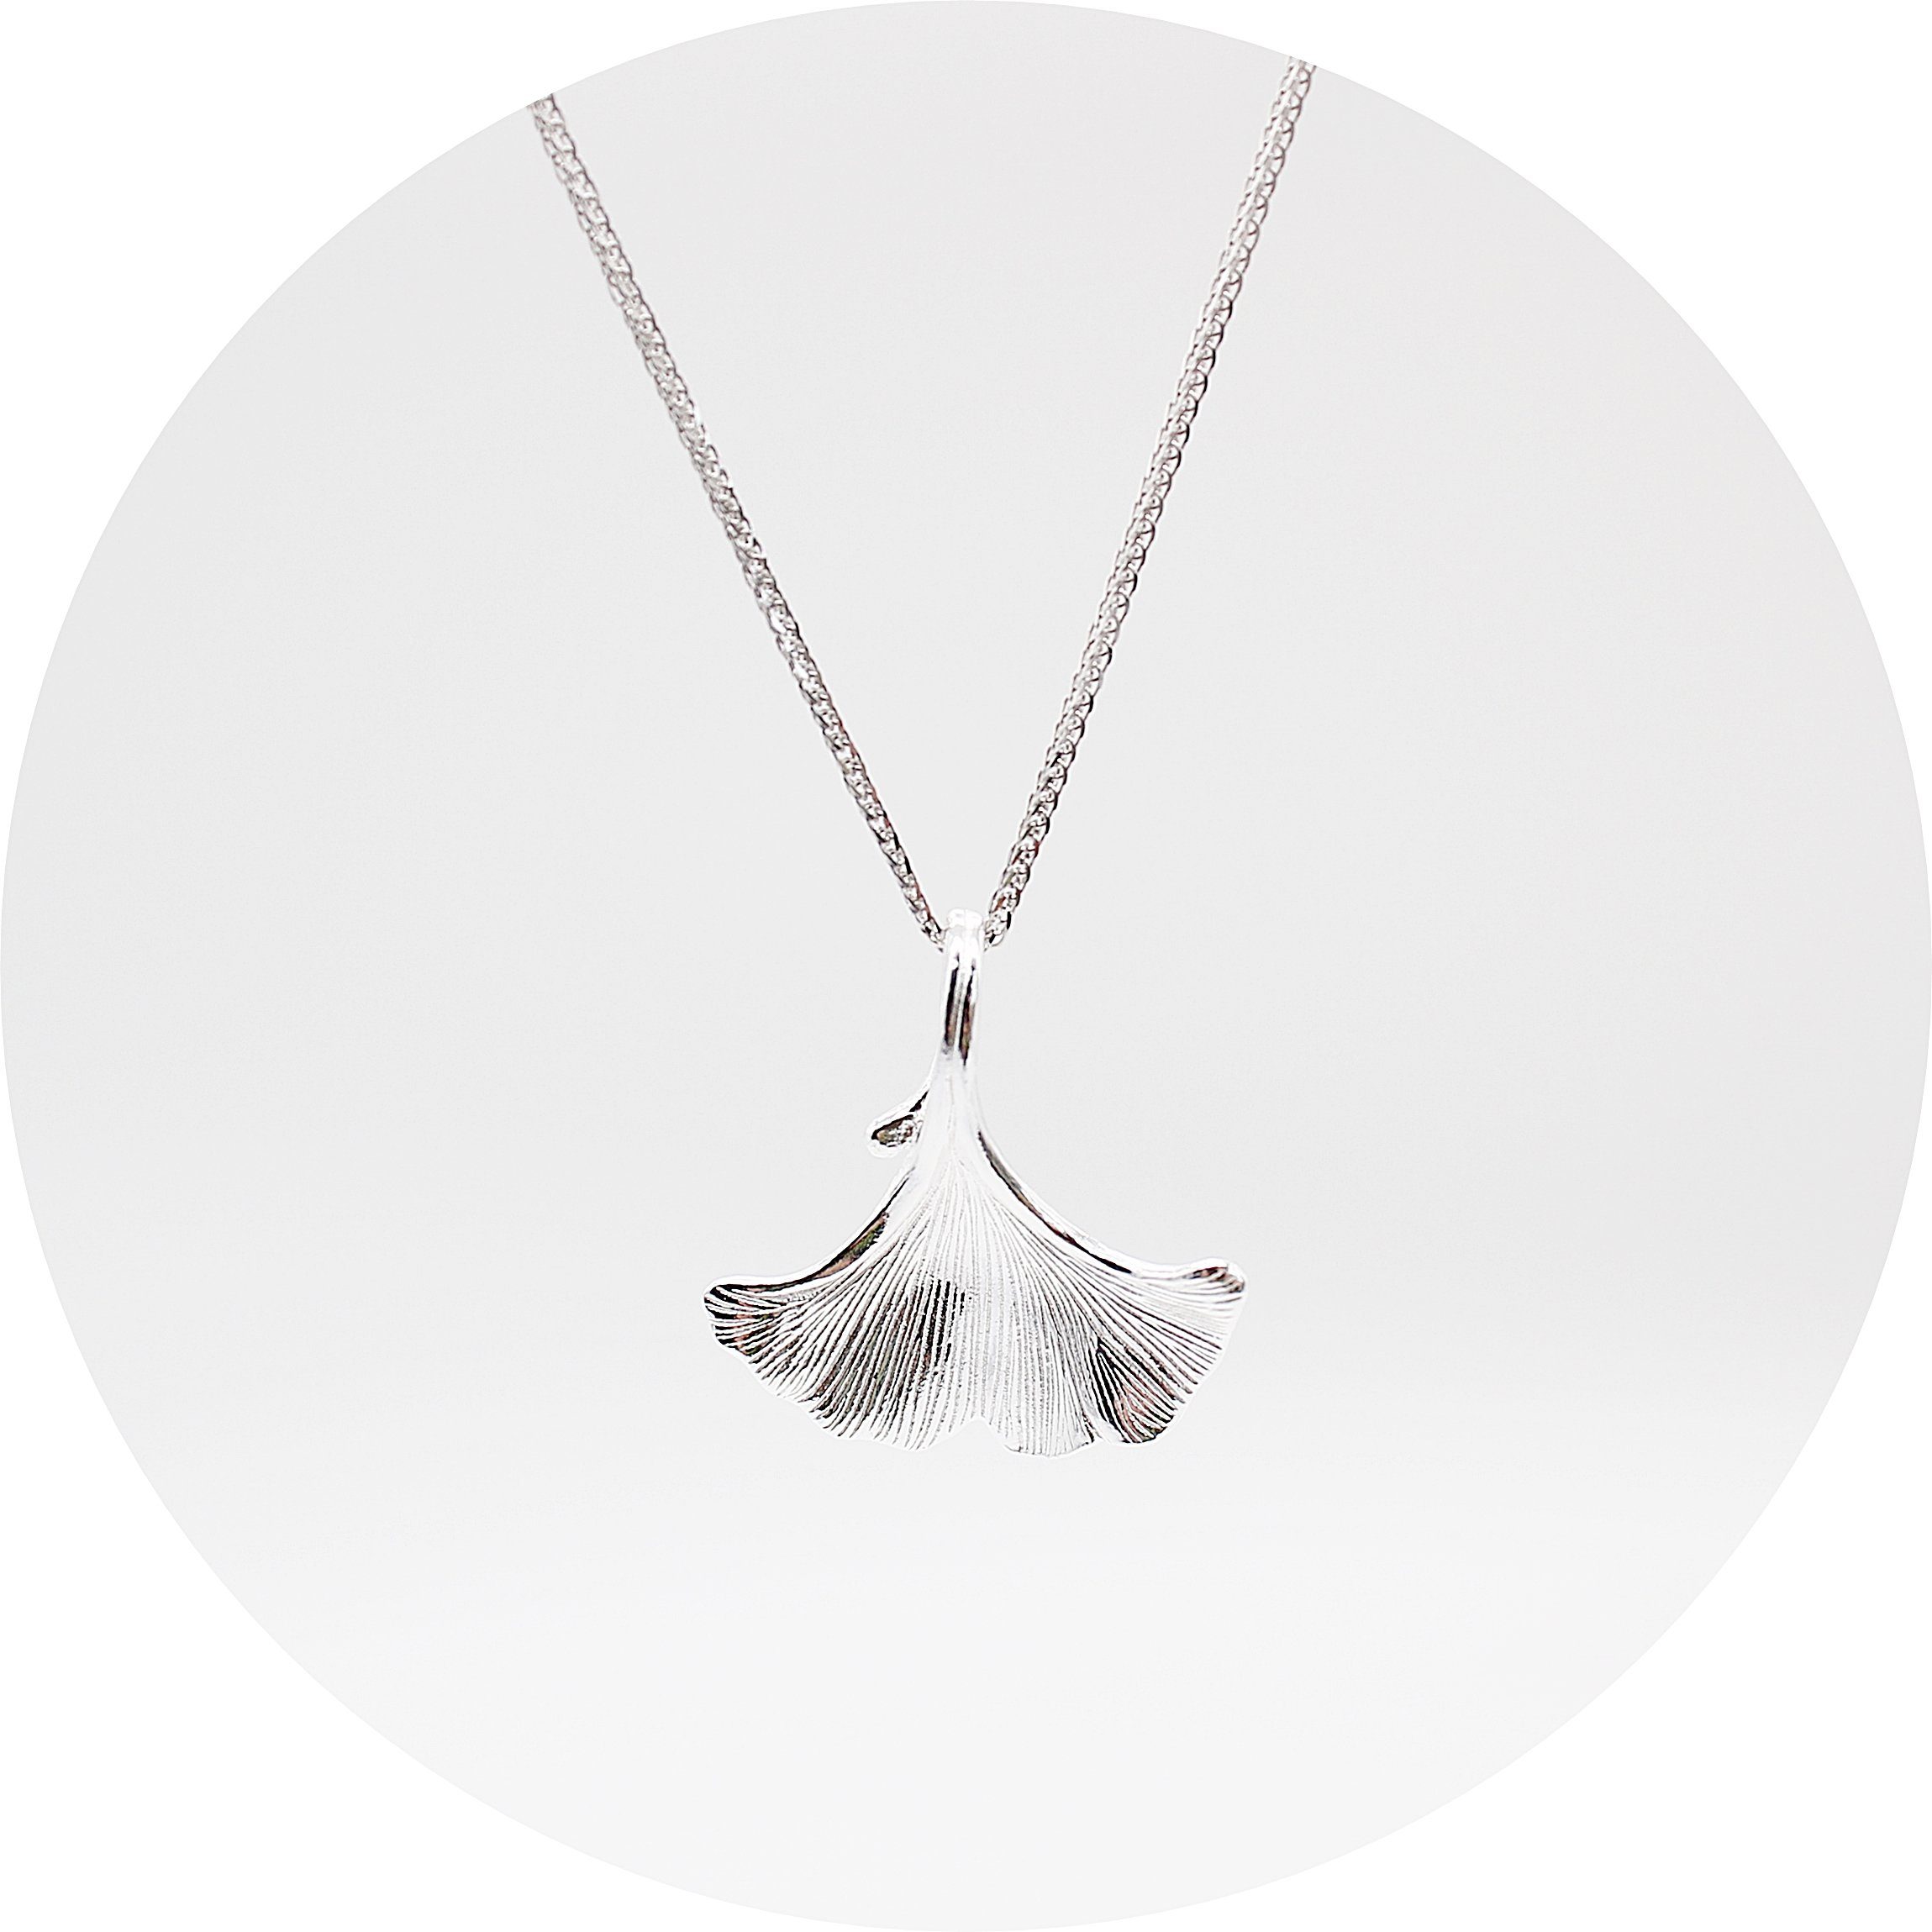 ELLAWIL Silberkette Halskette mit Ginkgoblatt Anhänger Kette Ginkgo Blatt Biloba (Kettenlänge 40 cm, Sterling Silber 925), inklusive Geschenkschachtel